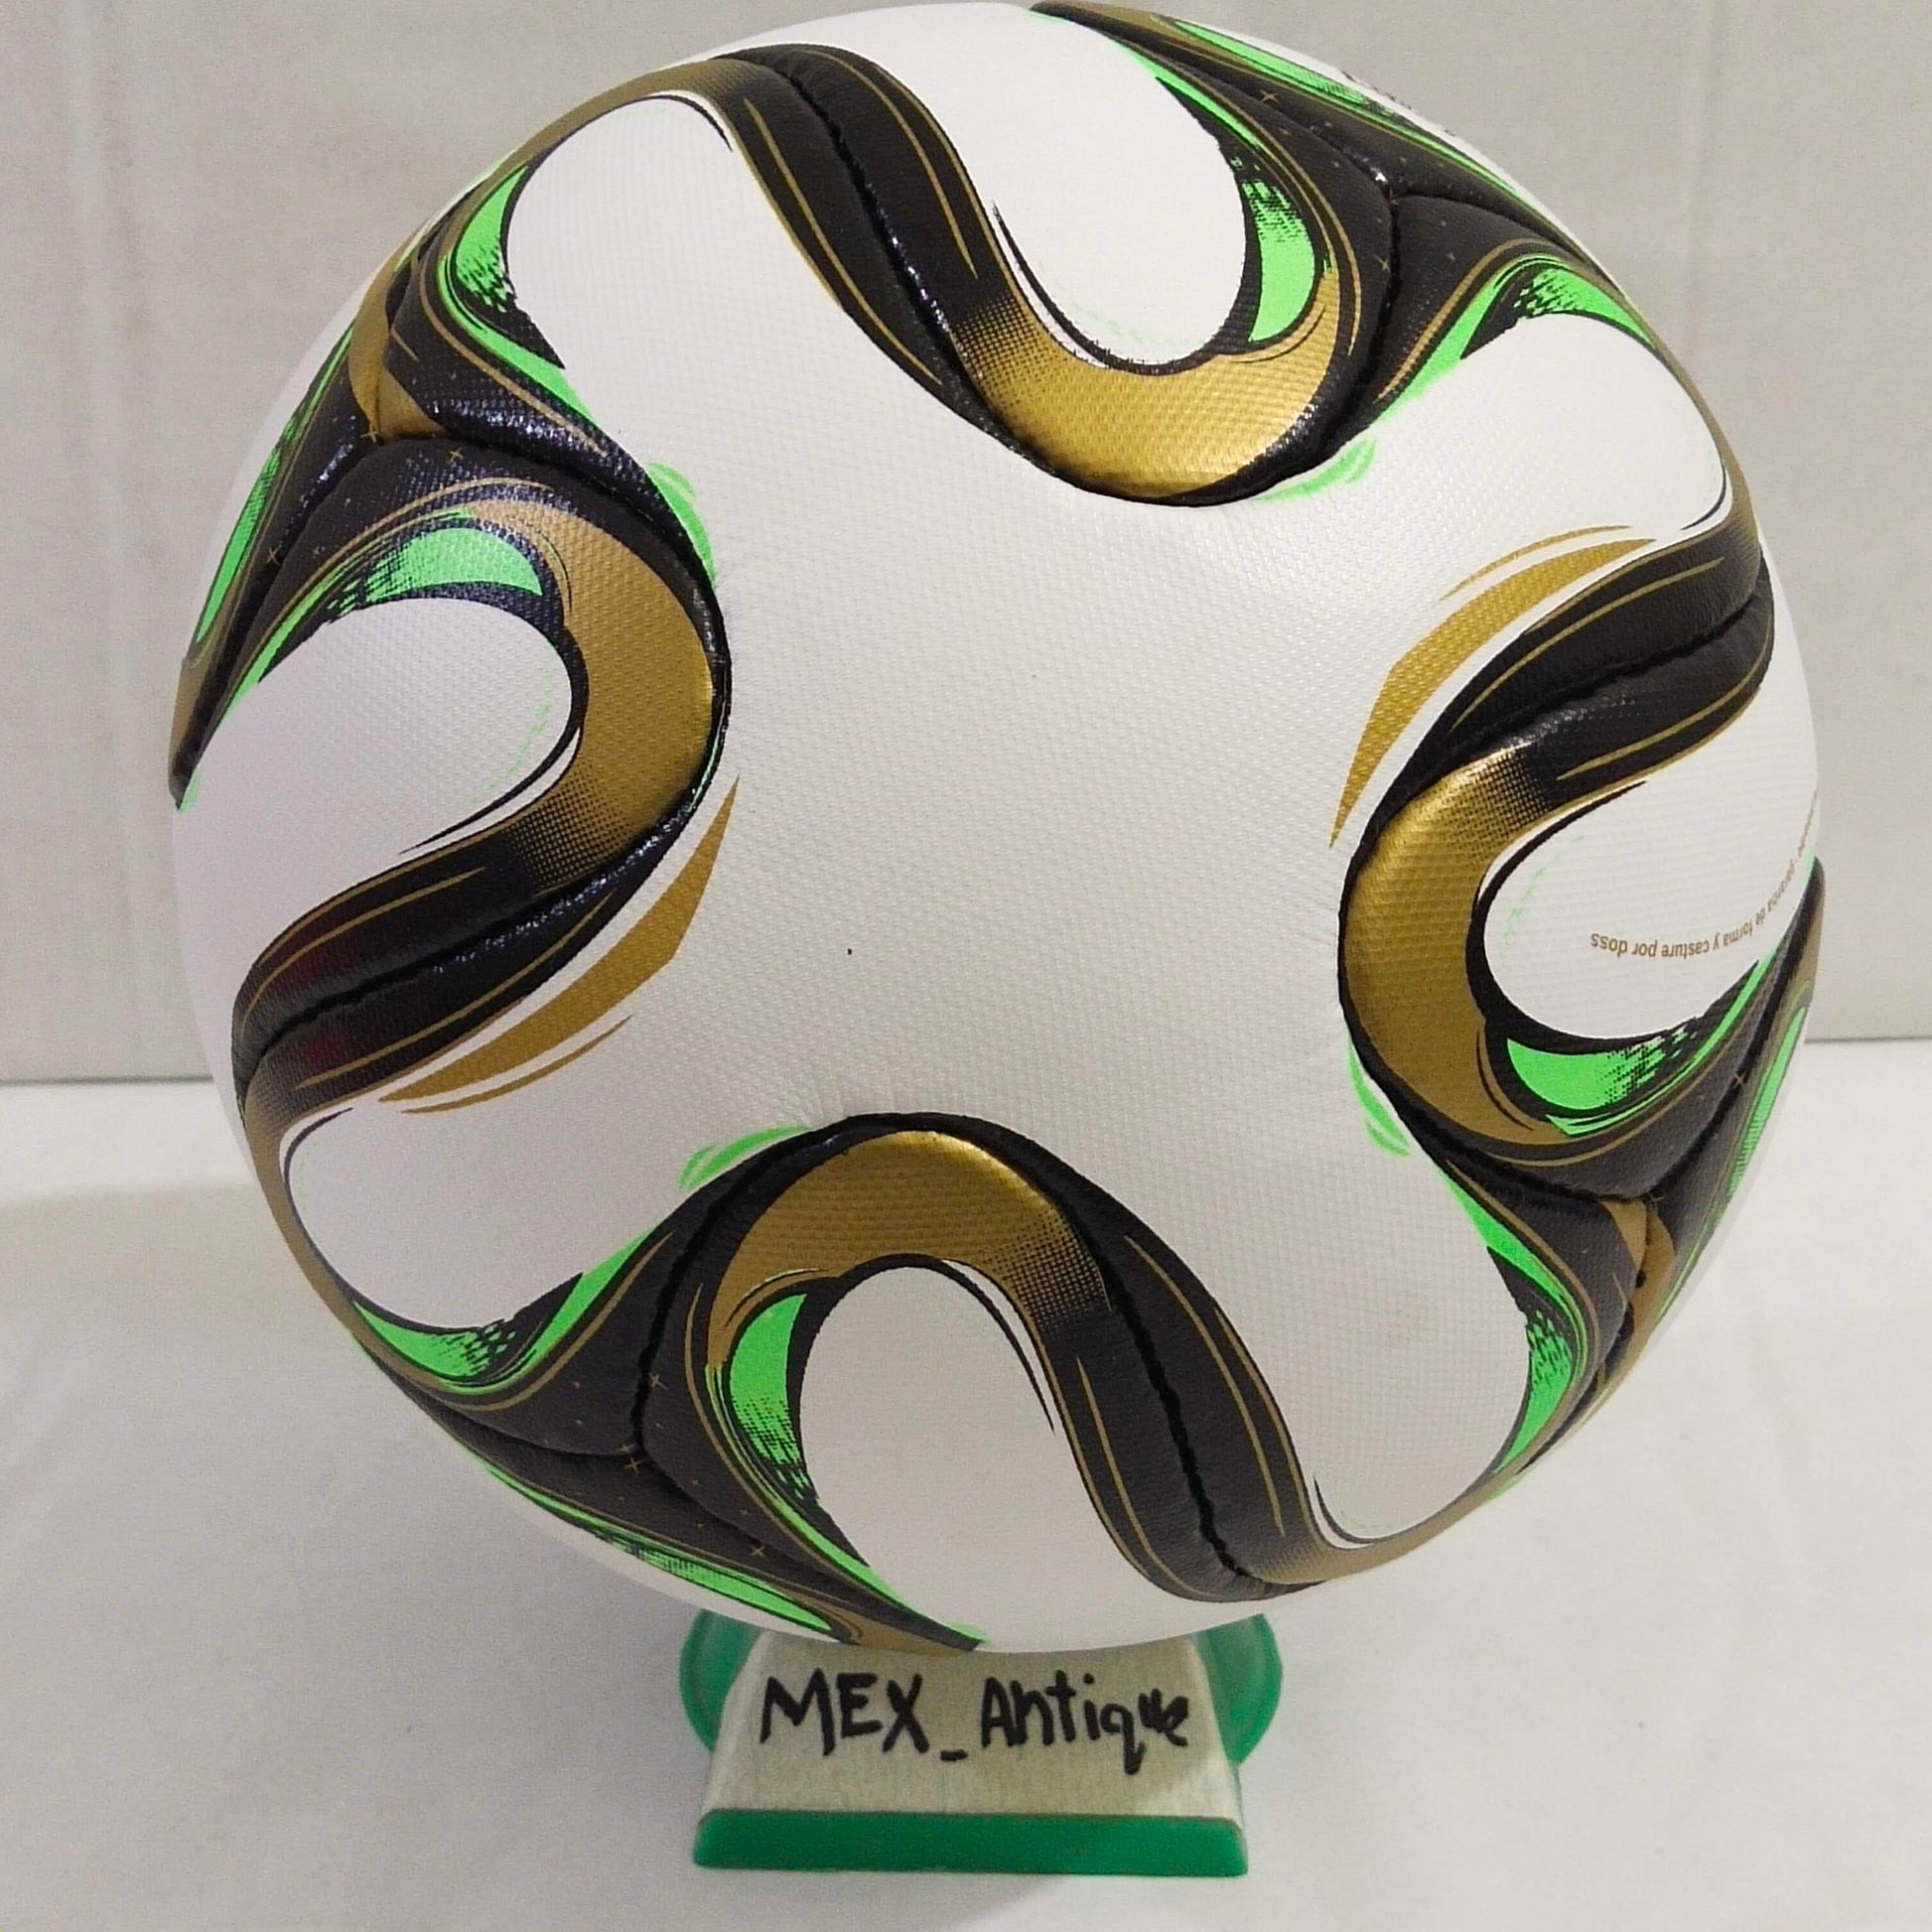 Adidas Brazuca Rio | Final Ball | 2014 | FIFA World Cup Ball | SIZE 5 07